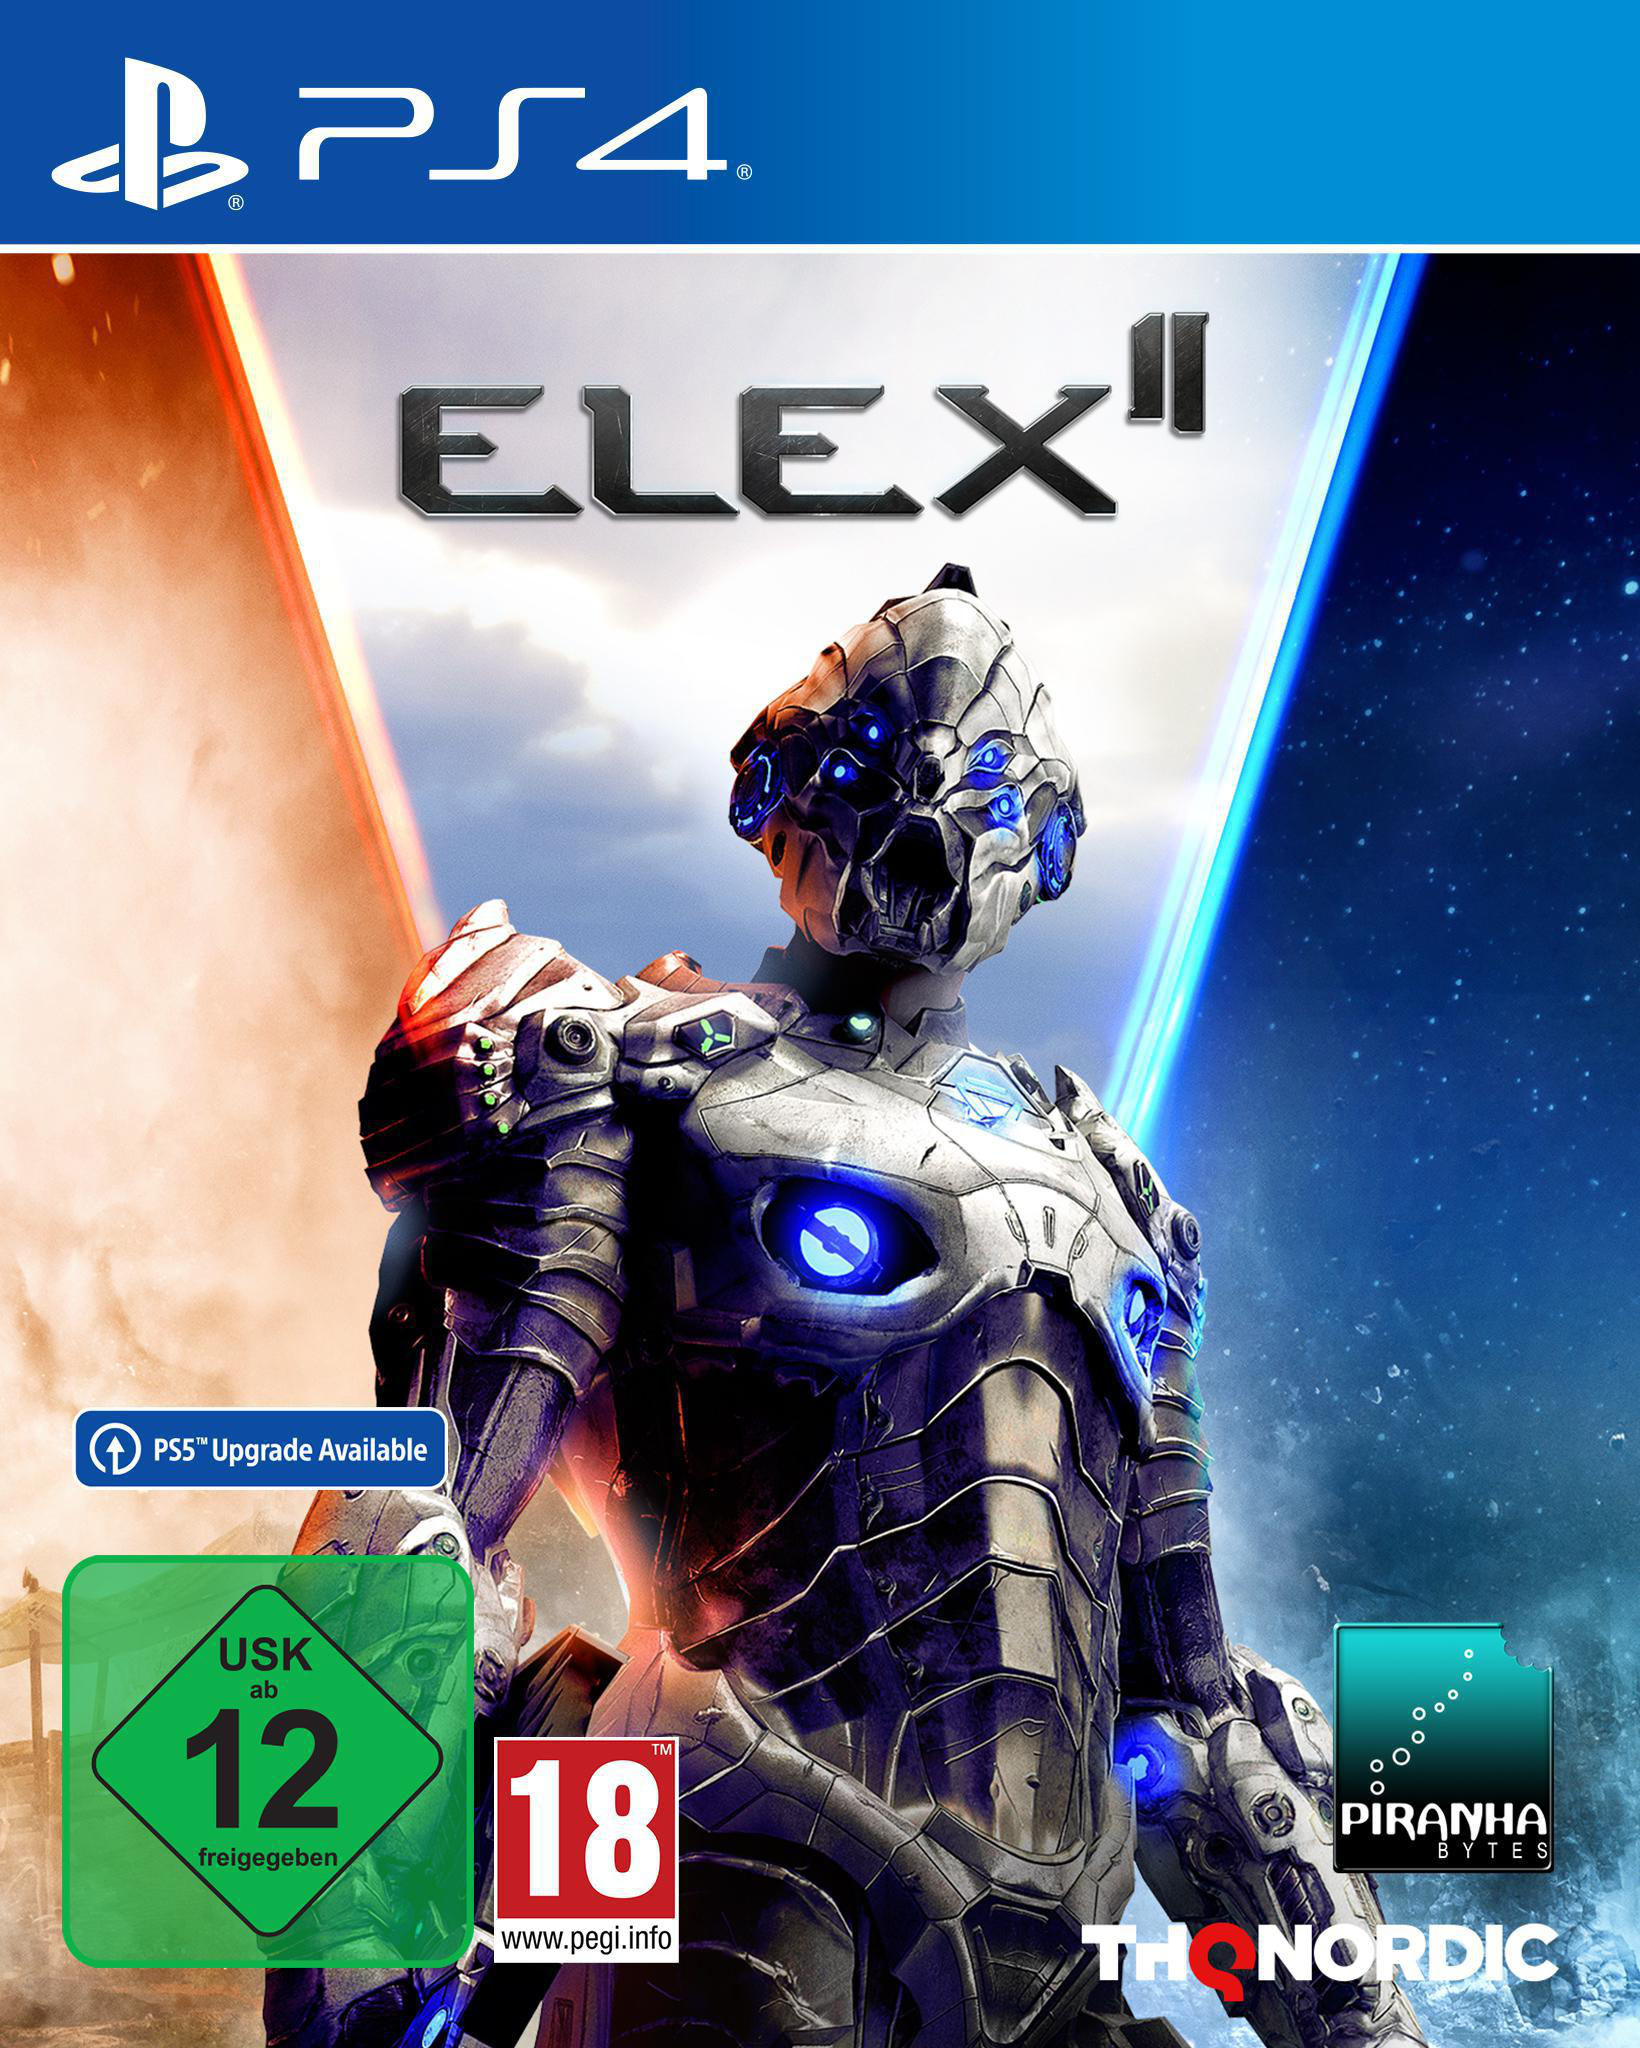 ELEX II - Day 1 Steelbook - Edition [PlayStation 4